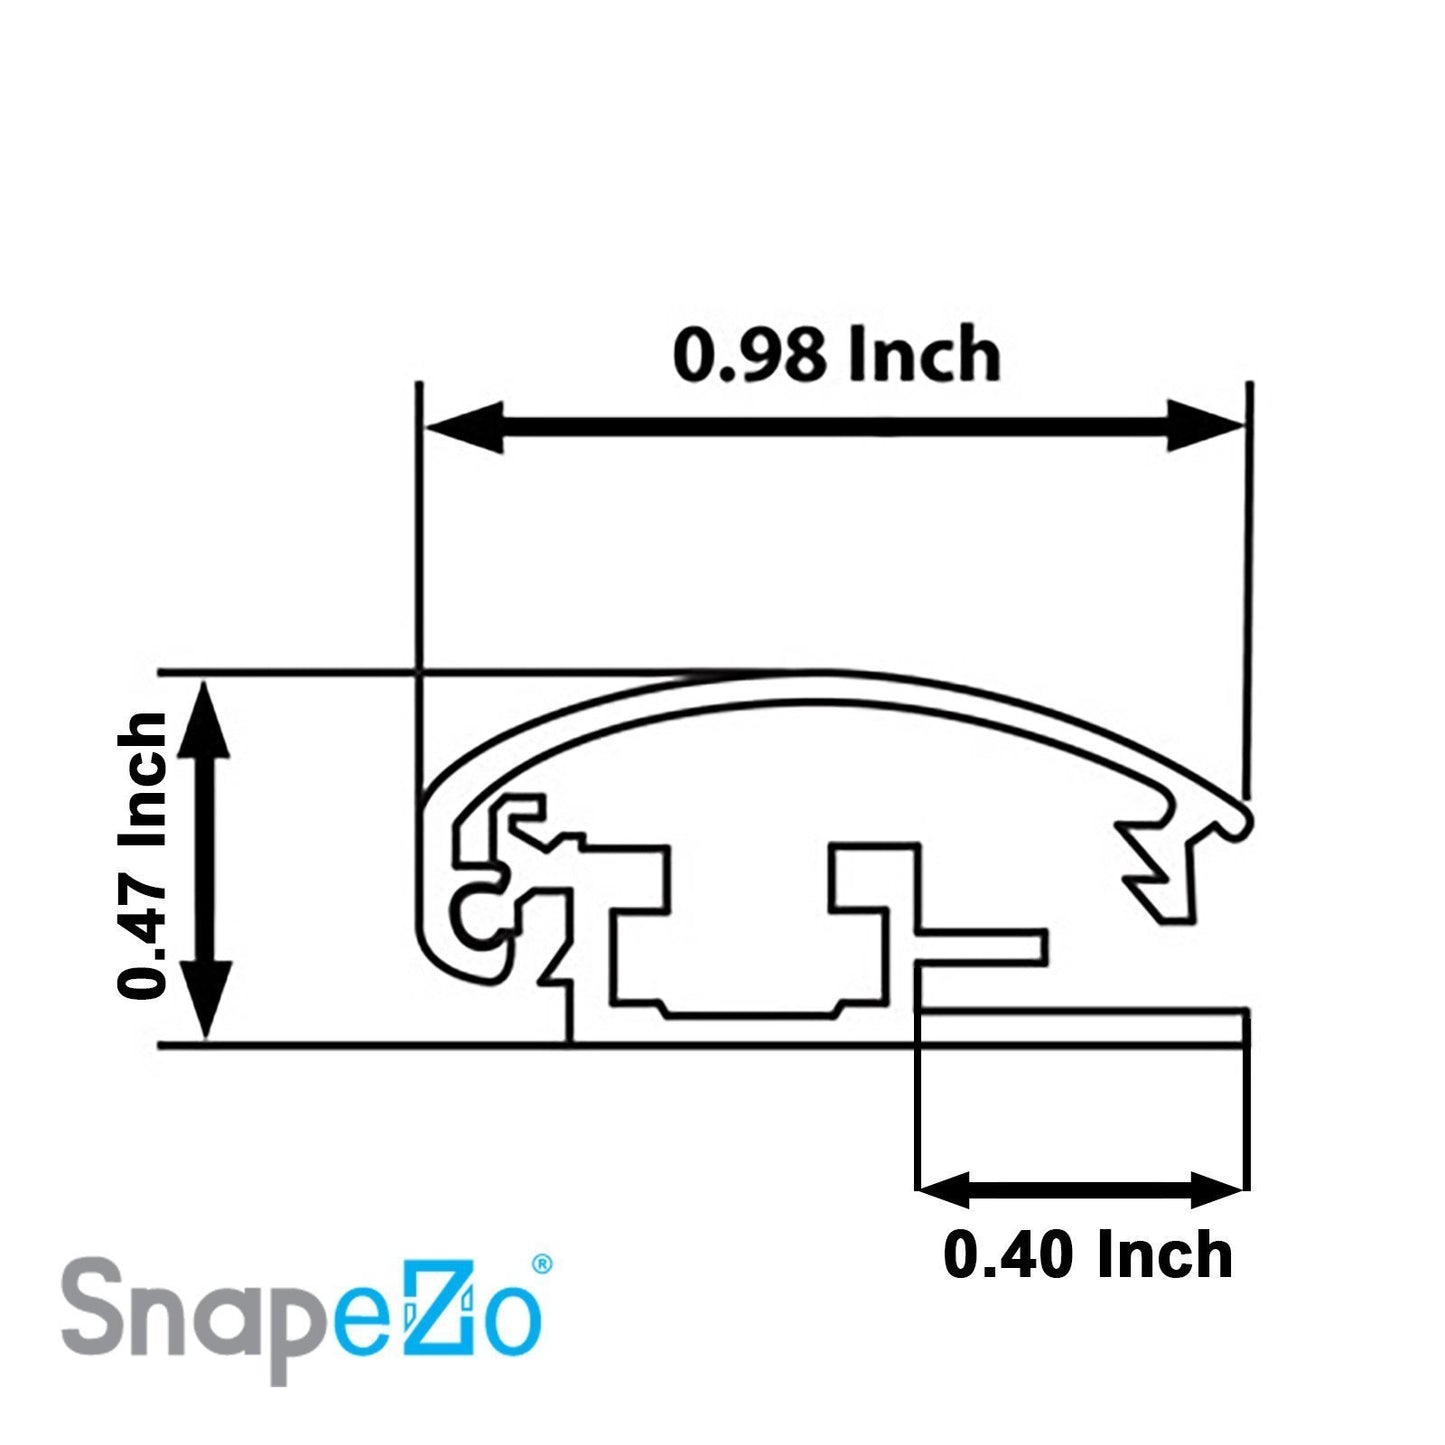 11x17 White Snapezo® Snap Frame - 1" Profile